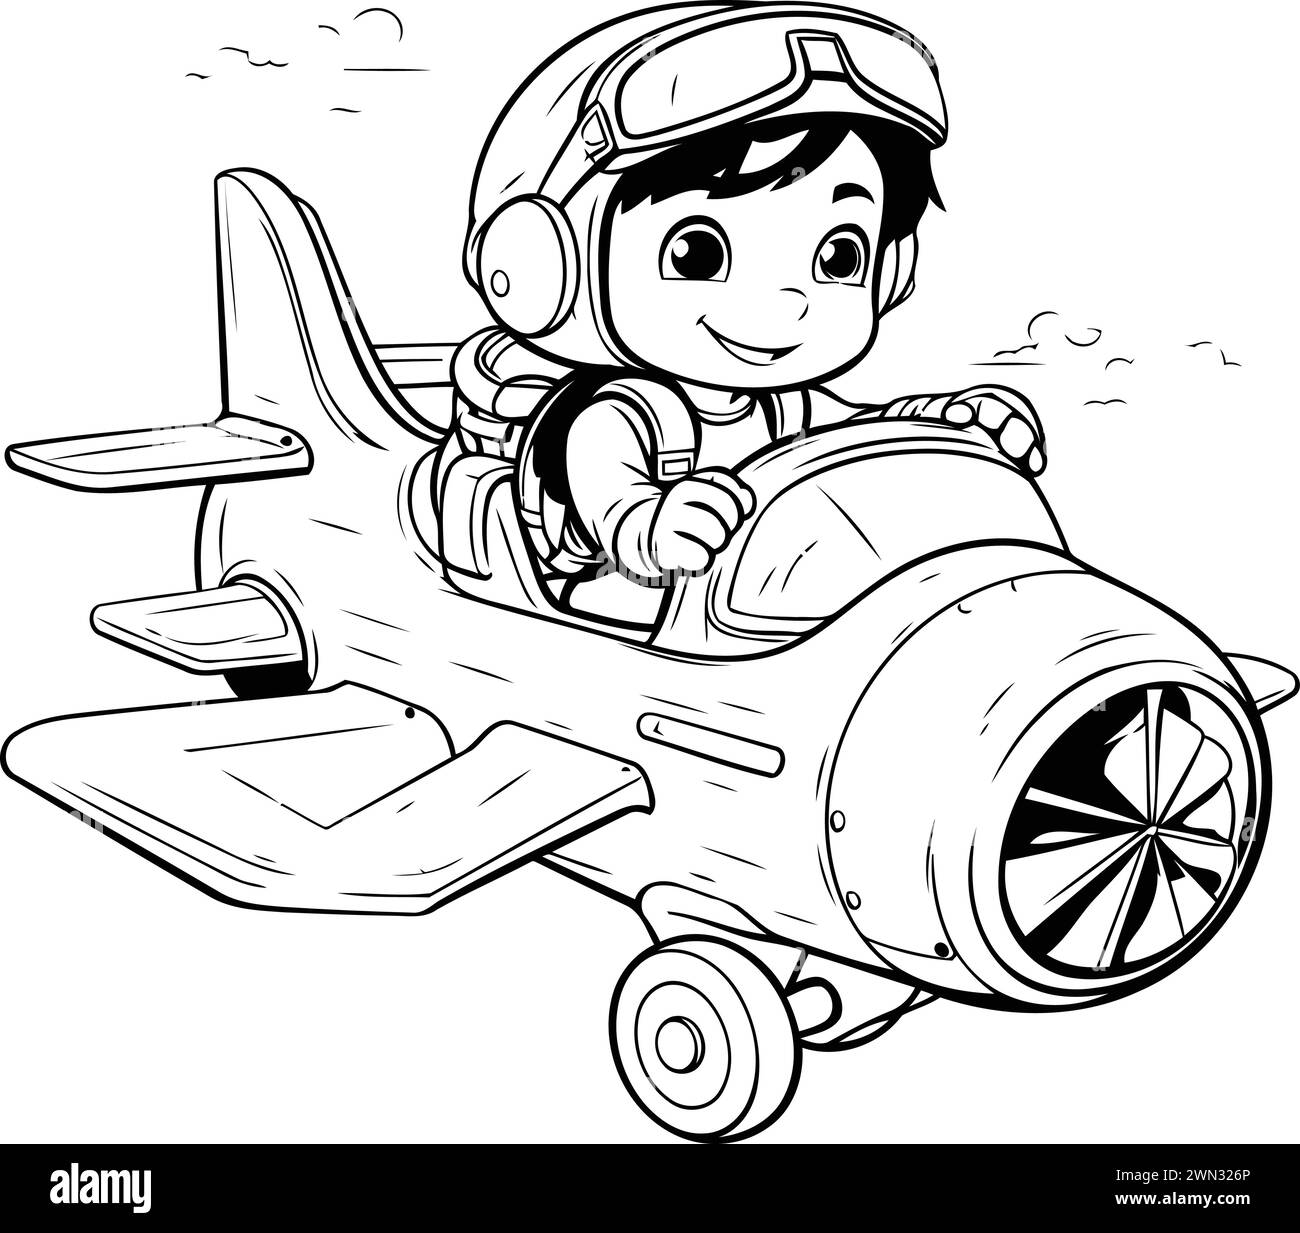 Kleiner Junge im Pilotenhelm, der ein Spielzeugflugzeug fährt. Vektorabbildung. Stock Vektor